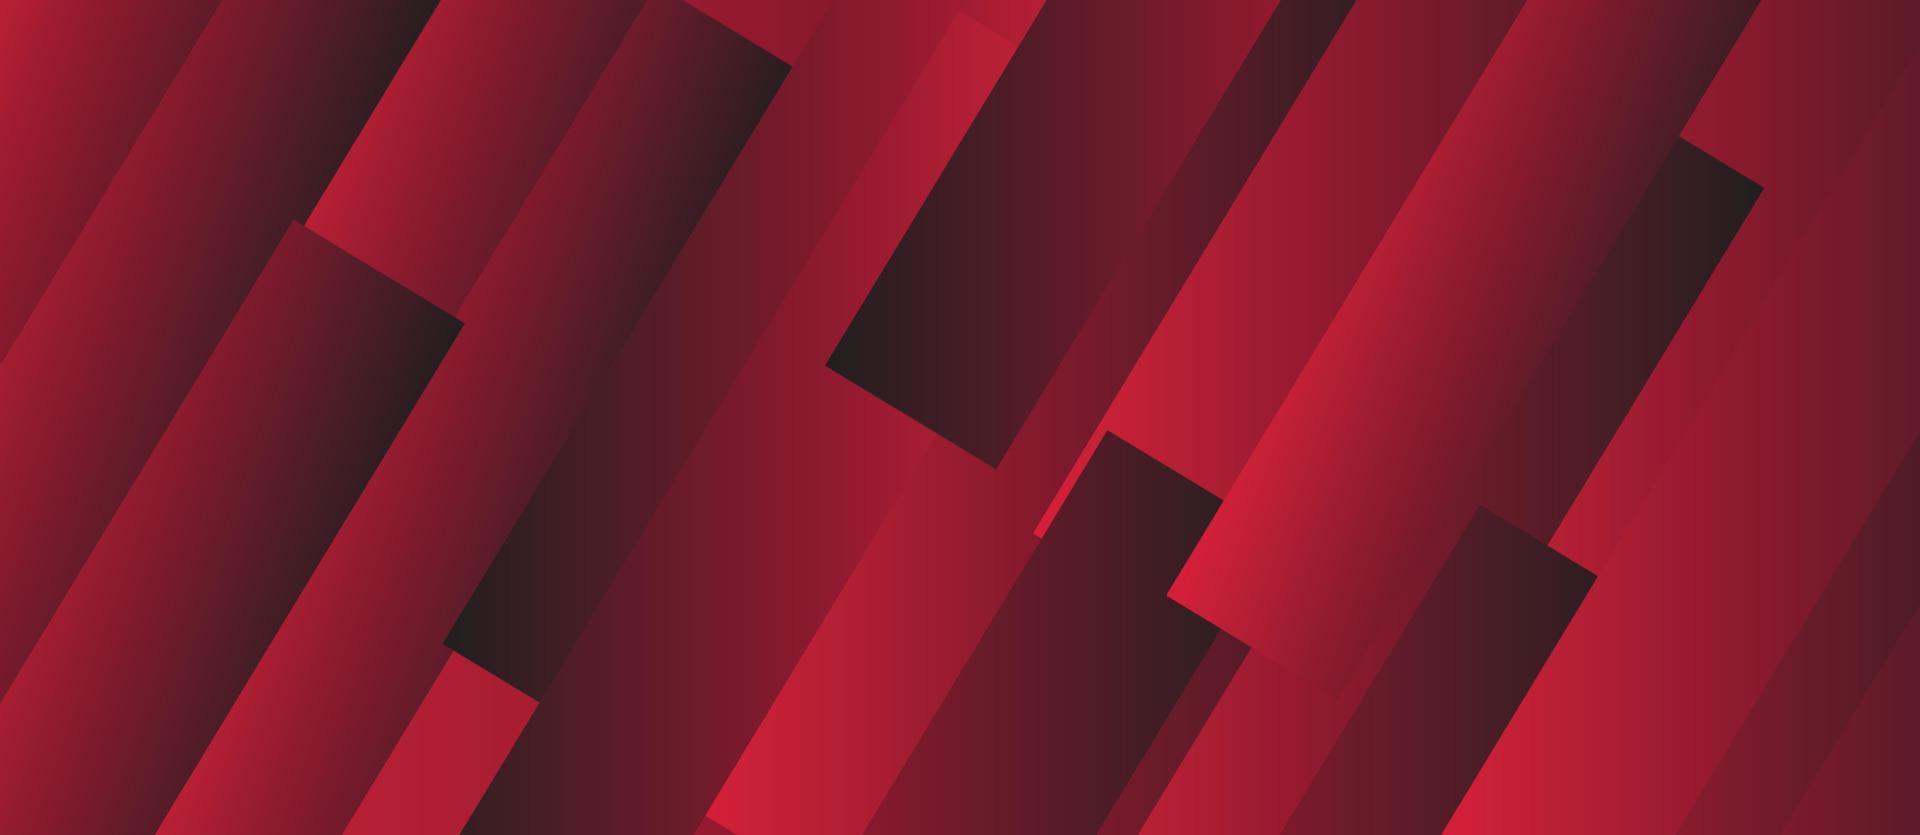 fondo abstracto rojo moderno. sombra de fondo abstracto rojo. Fondo de diseño de papel en blanco abstracto rojo brillante vector